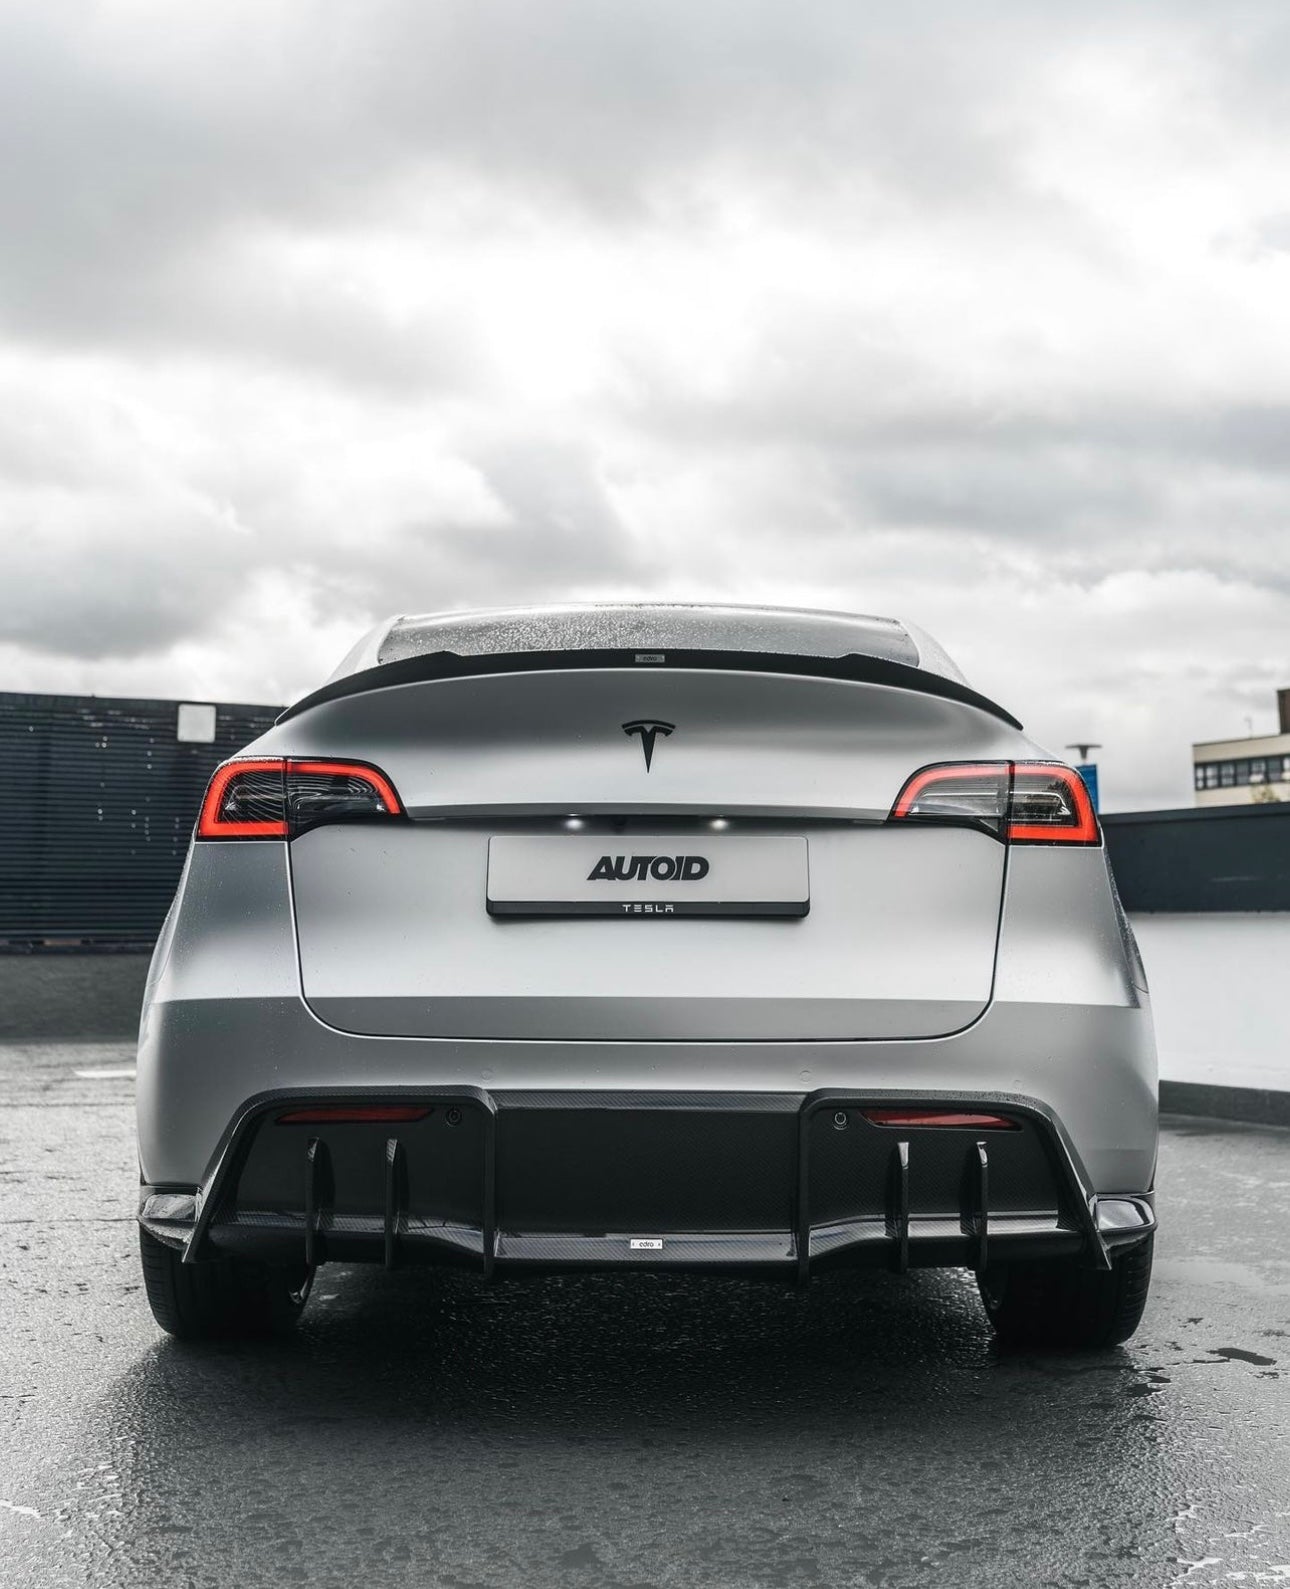 Tesla Model Y Pre-Preg Carbon Fibre Rear Spoiler by Adro (2020+), Rear Spoilers, Adro - AUTOID | Premium Automotive Accessories